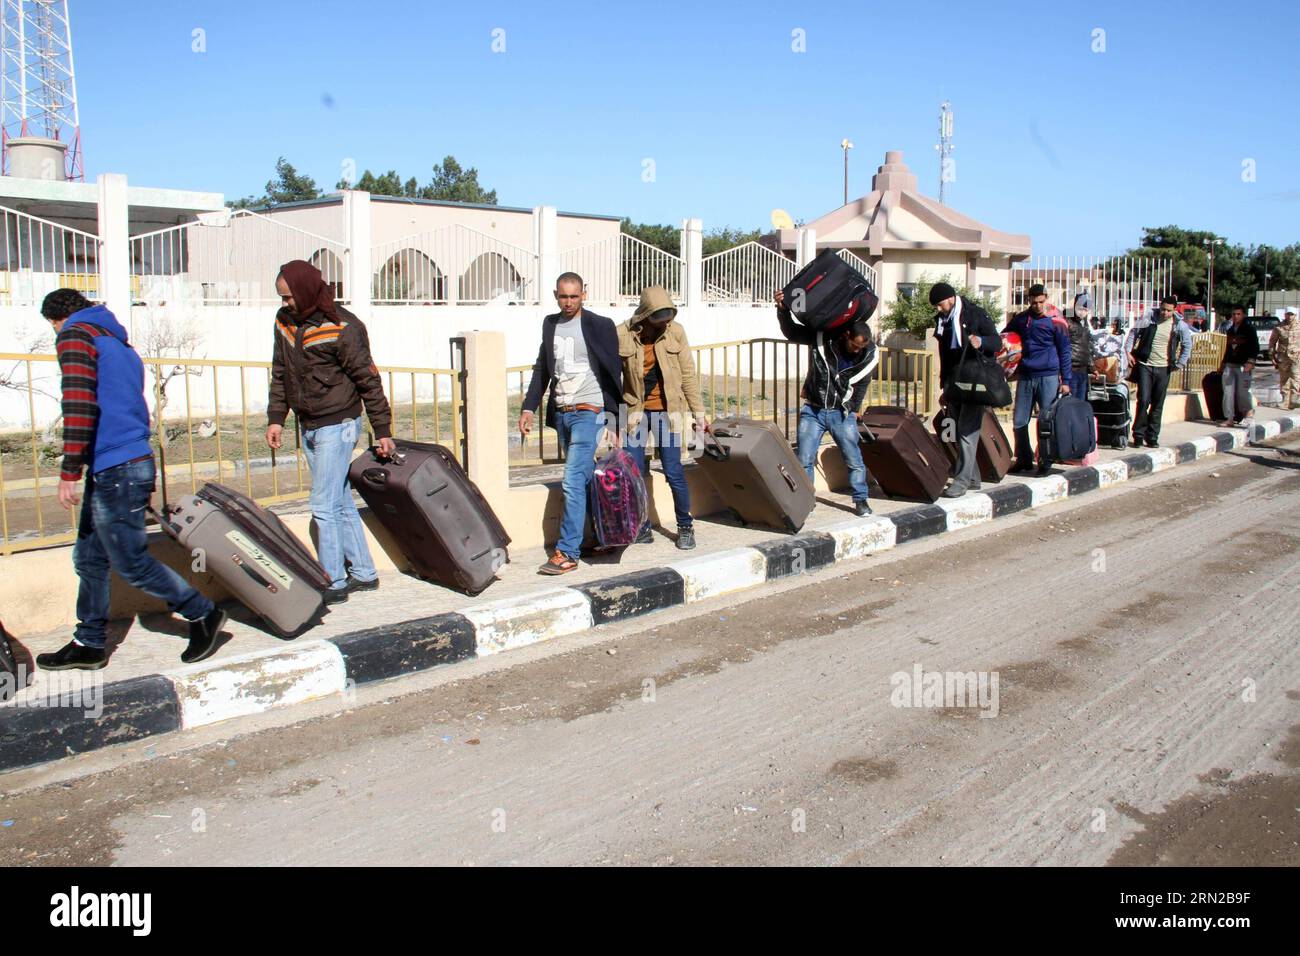 (150223) -- RAS JADIR, 23. Februar 2015 -- Ägypter gehen am 23. Februar 2015 zur libysch-tunesischen Grenze in Ras Jadir, Libyen. Hunderte ägyptische Arbeiter haben Libyen evakuiert, nachdem der Islamische Staat das Video veröffentlicht hat, das die Enthauptung von 21 ägyptischen koptischen Christen zeigt. LIBYEN-RAS JADIR-ÄGYPTISCHE EVAKUIERUNG HamzaxTurkia PUBLICATIONxNOTxINxCHN Ras 23. Februar 2015 Ägypter gehen AM 23. Februar 2015 in Ras Libyen an die libysch-tunesische Grenze. Hunderte ägyptische Arbeiter sind aus Libyen evakuiert worden, nachdem der Islamische Staat das Video veröffentlicht hat, das den von 21 ägyptischen Koptischen C zeigt Stockfoto